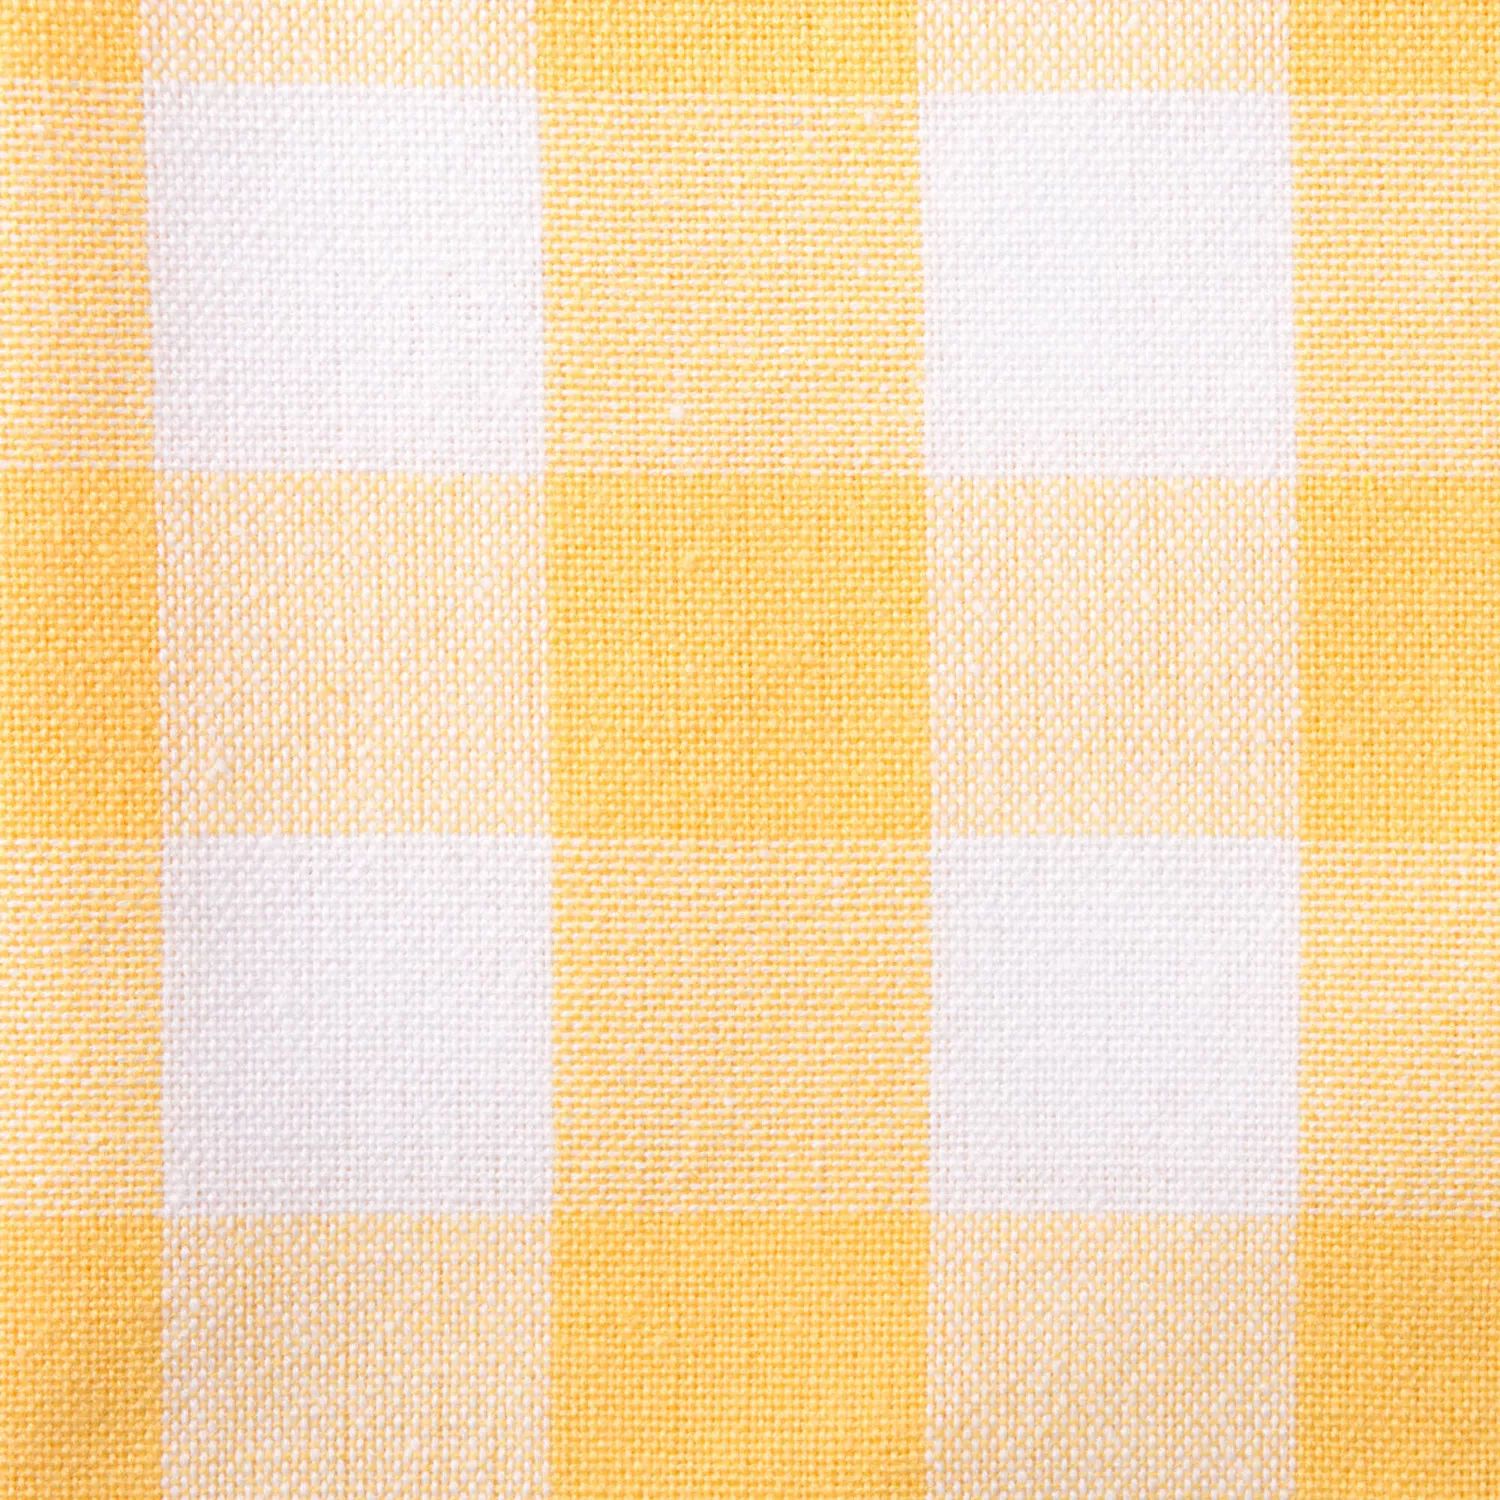 52-дюймовая квадратная скатерть в желтую и белую клетку